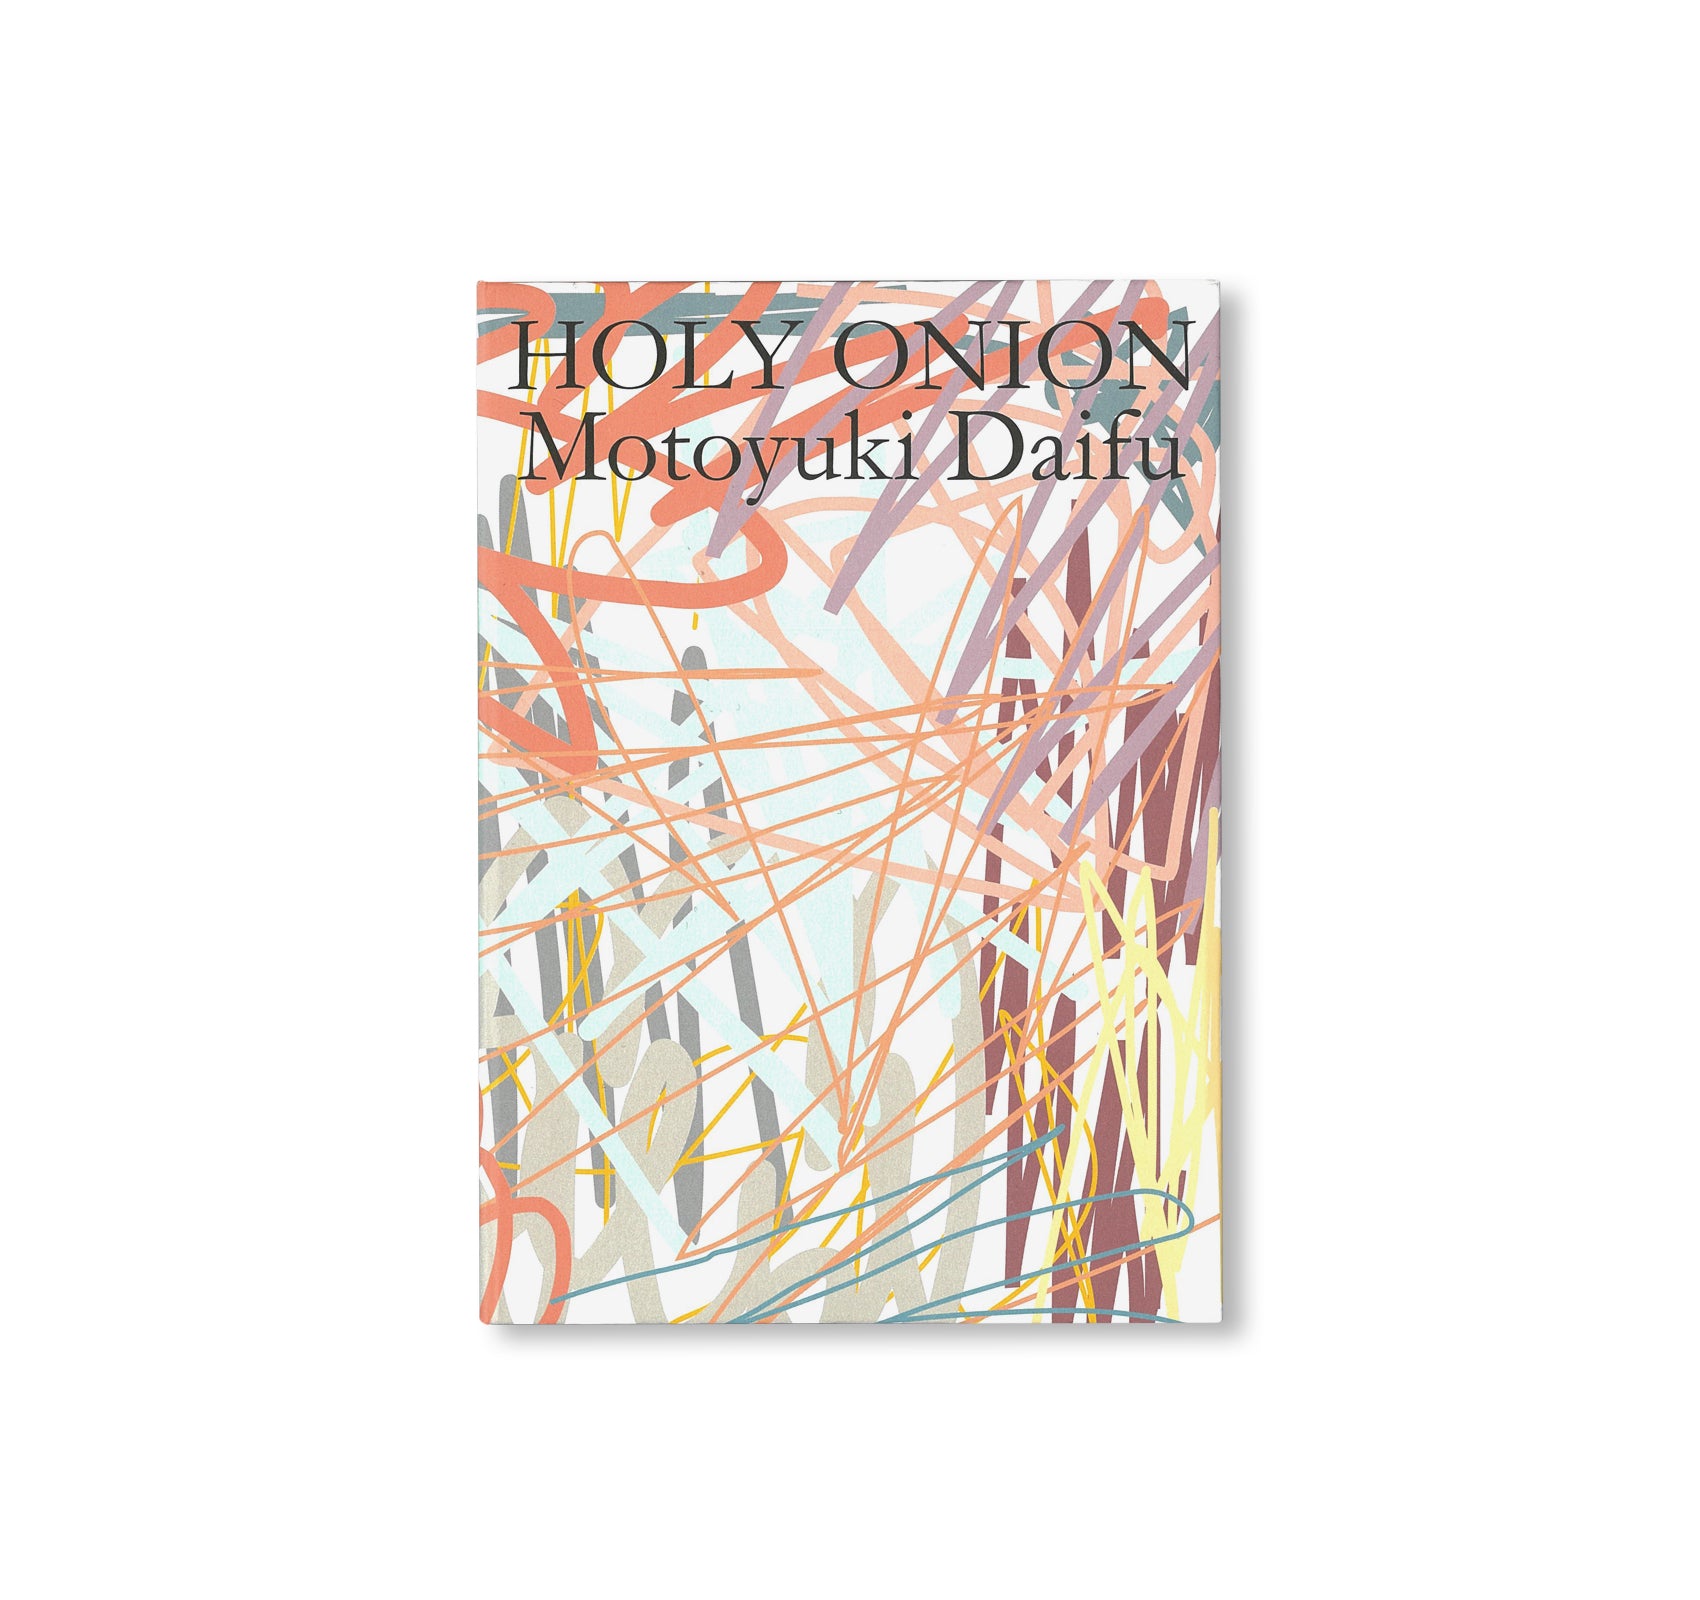 HOLY ONION by Motoyuki Daifu [SIGNED]